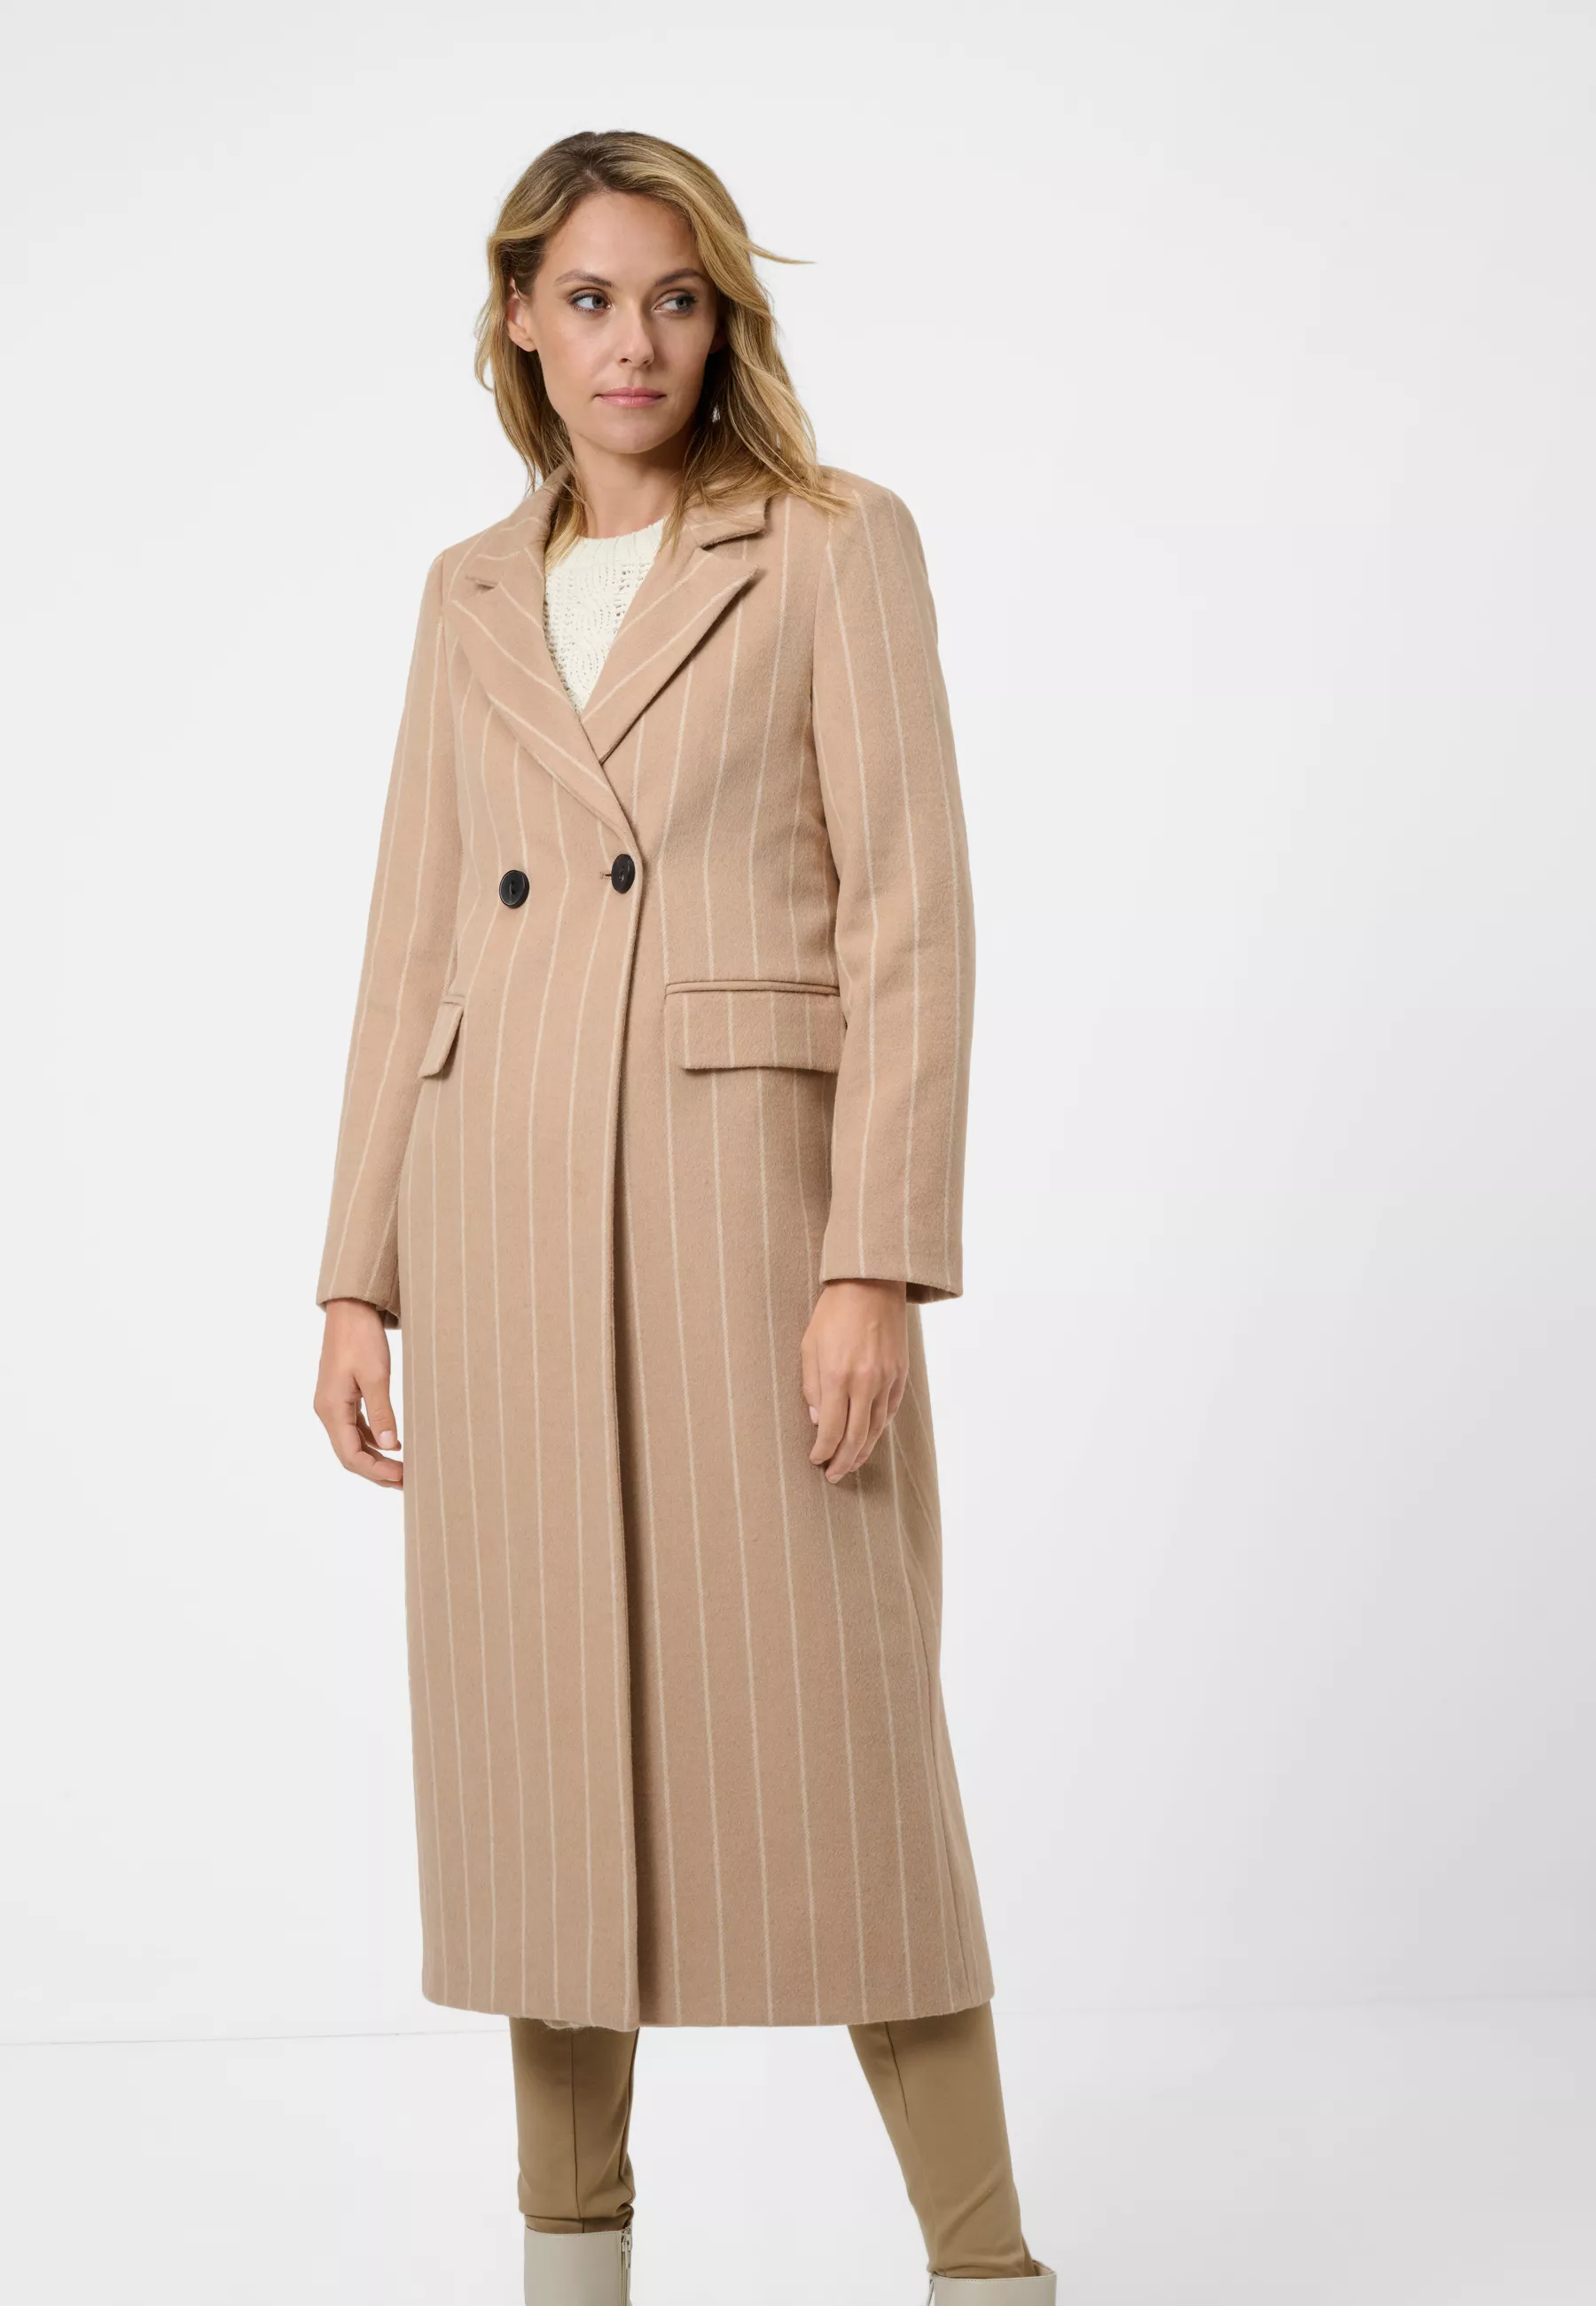 Damen Textil Mantel Valia in Beige Gestreift von Ricano, Frontansicht am Model